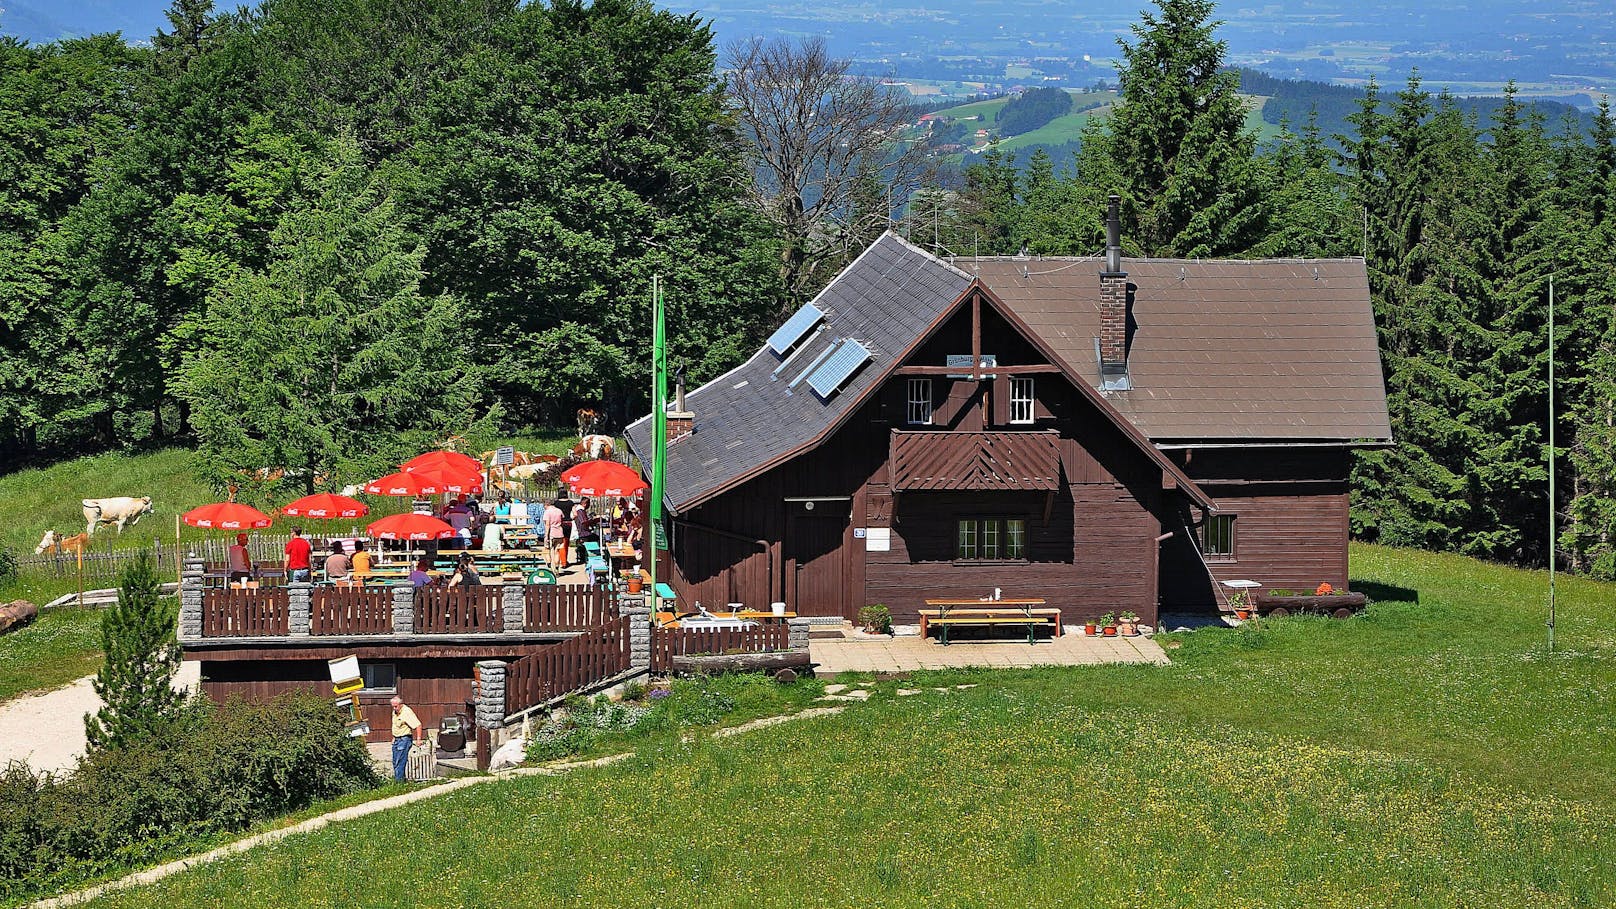 "Blöd gelaufen" – beliebte Berghütte muss schließen